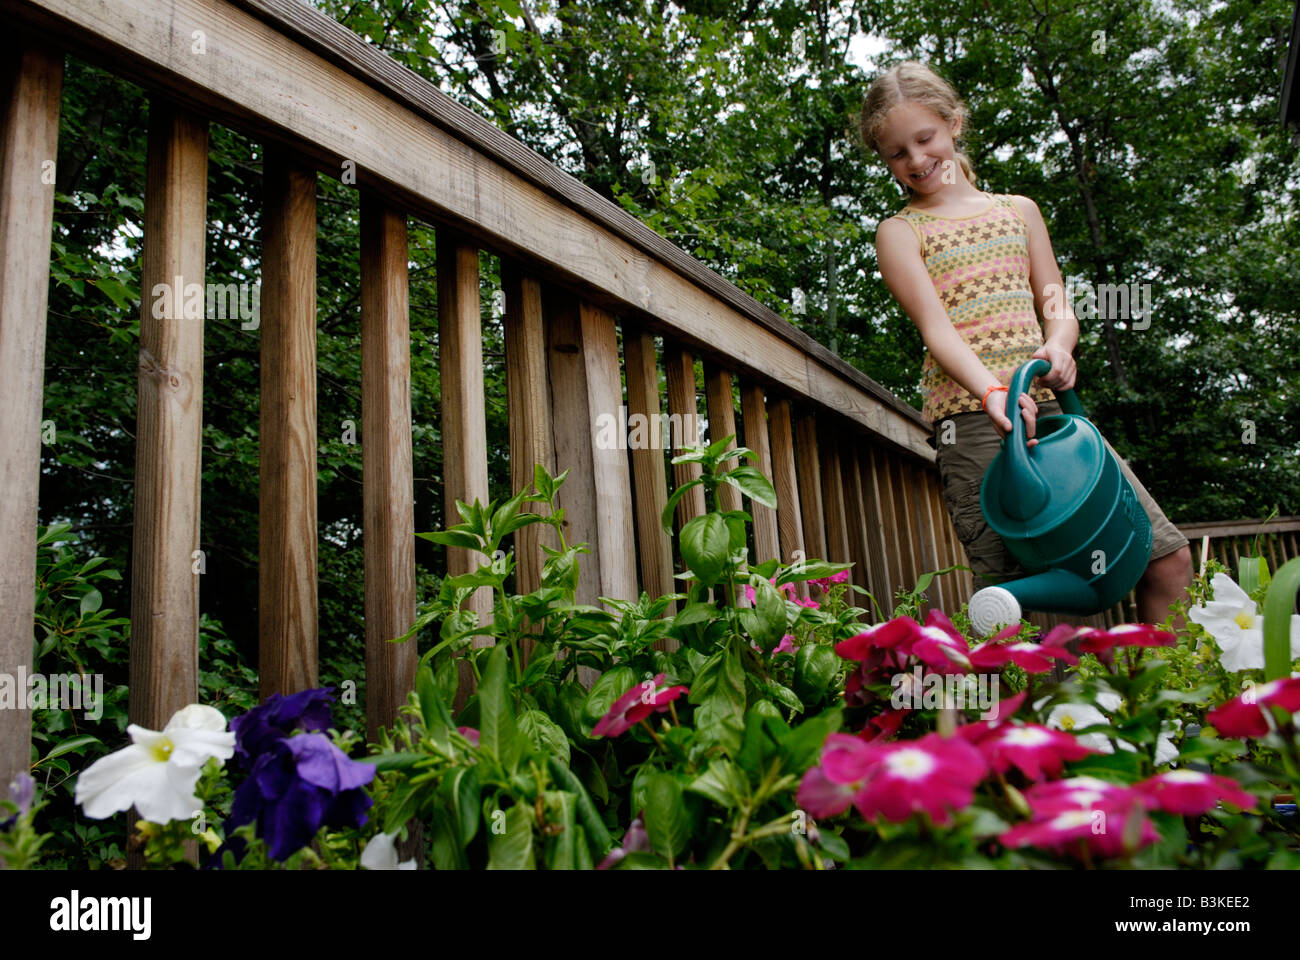 Ein neun Jahres altes Mädchen Wasser Blumen Gemüse und Kräuter in einem städtischen Vorort Garten auf einem hinteren Deck eines Hauses Stockfoto